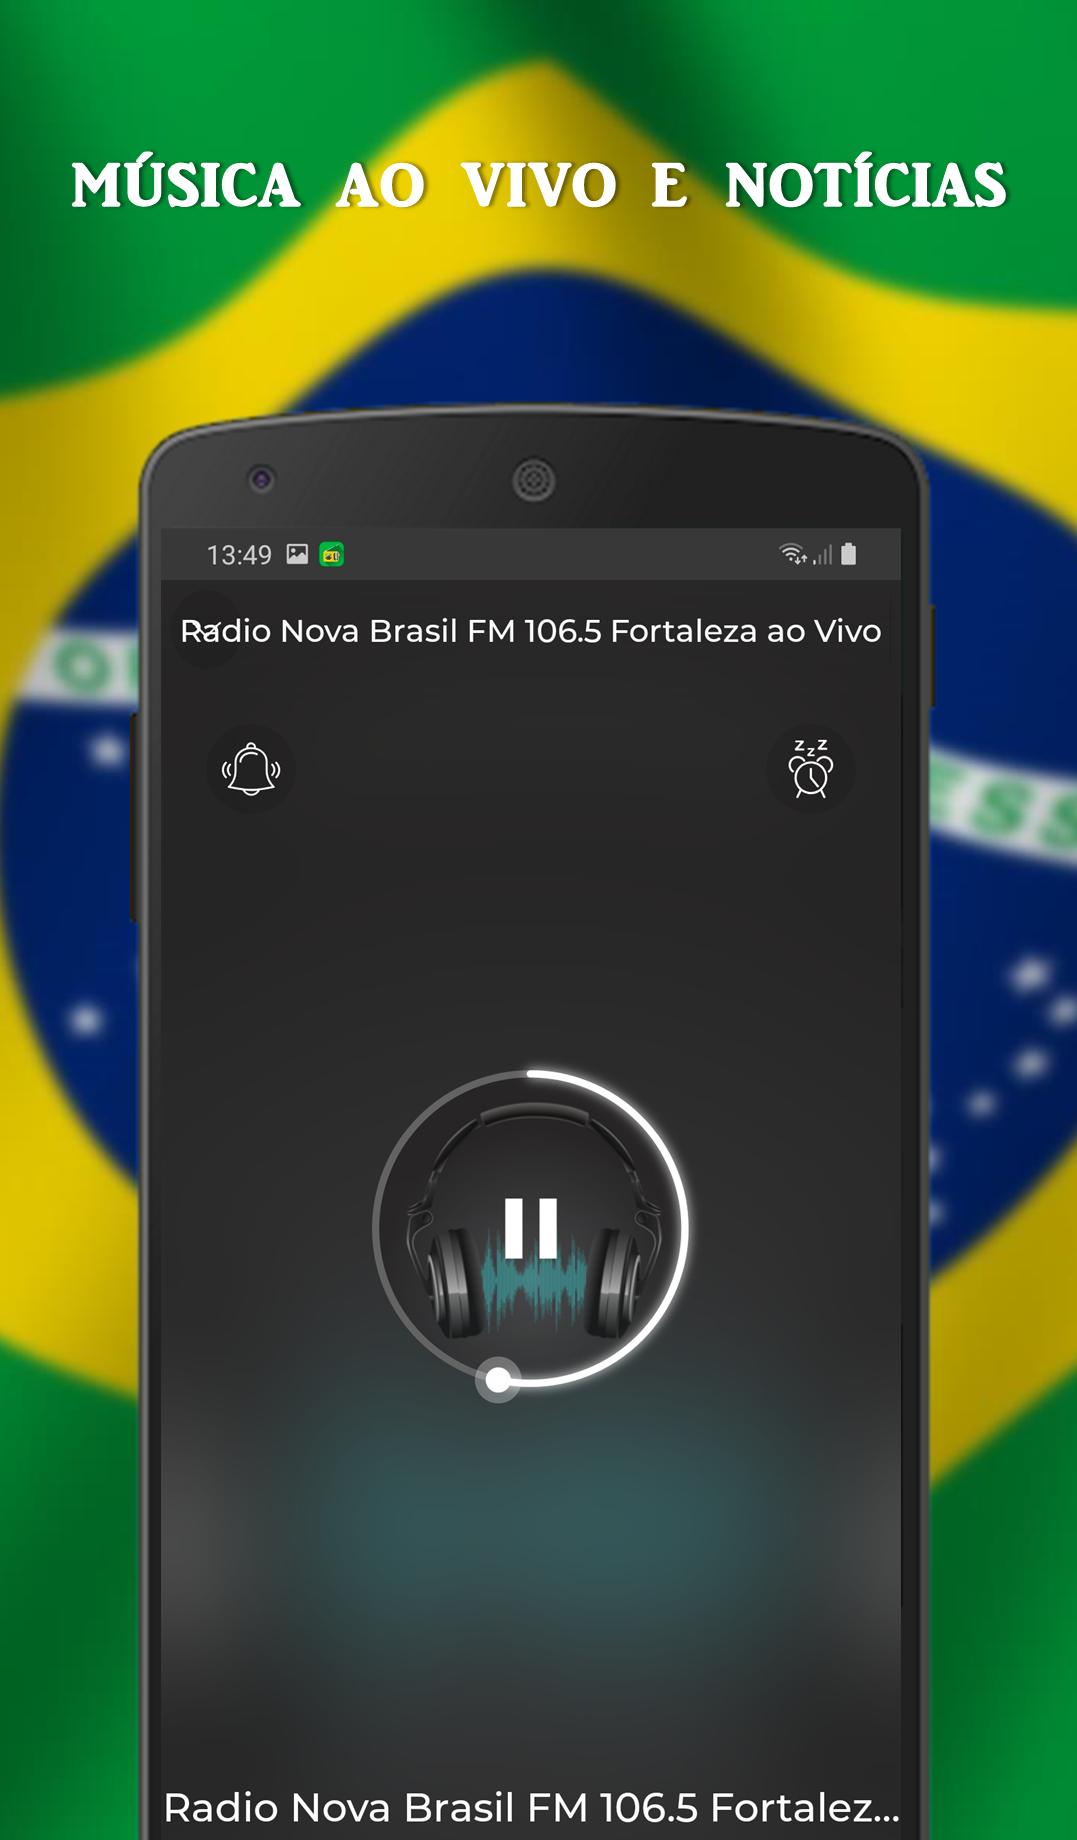 Radio Nova Brasil FM 106.5 Fortaleza en Vivo for Android - APK Download